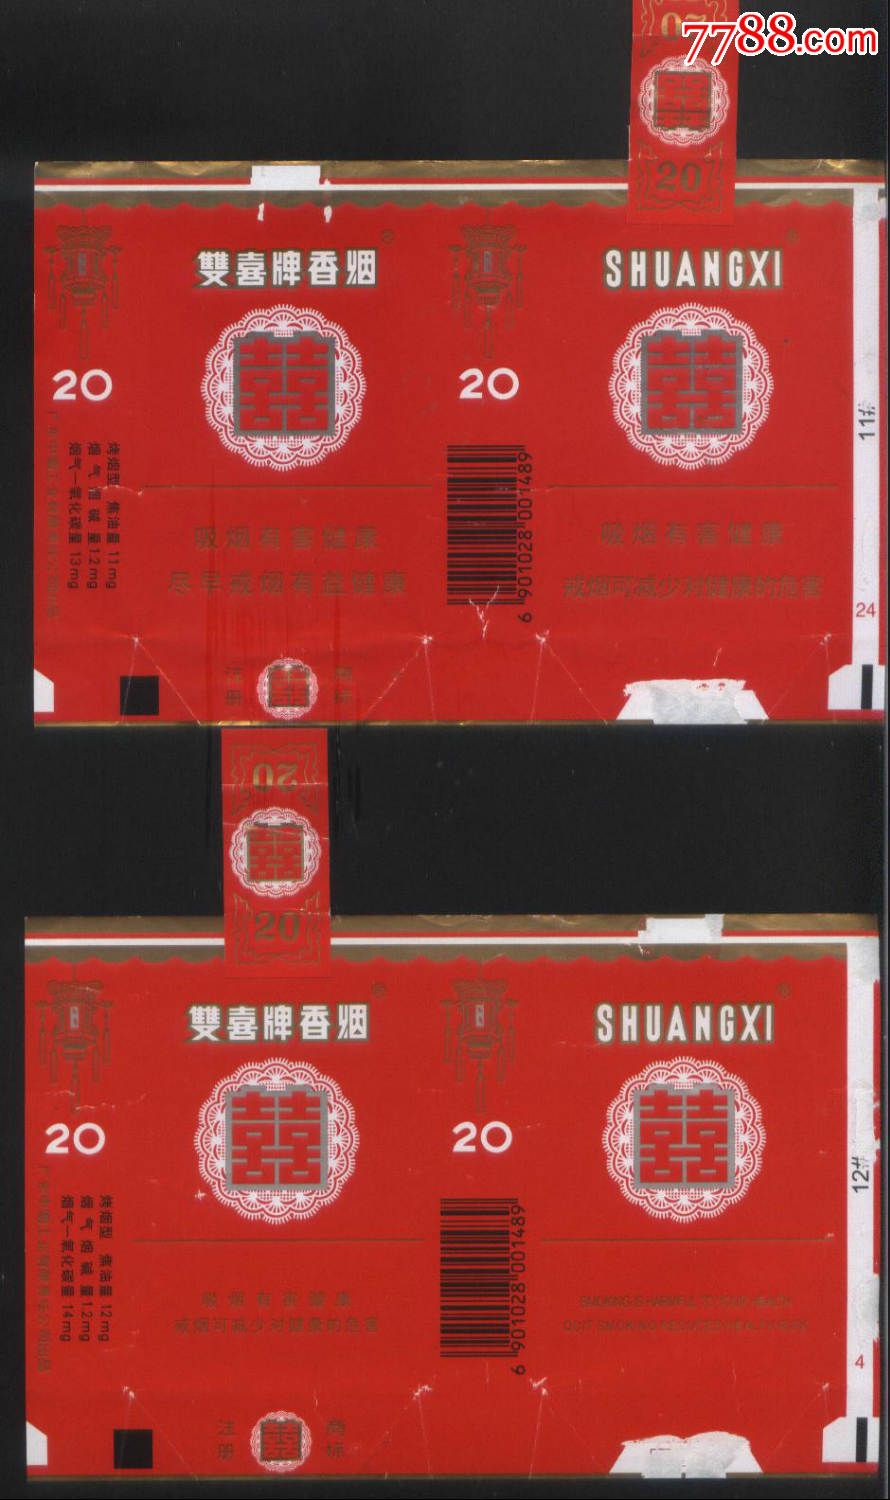 广东中烟工业公司两种不同的双喜牌软包拆包标正背面图